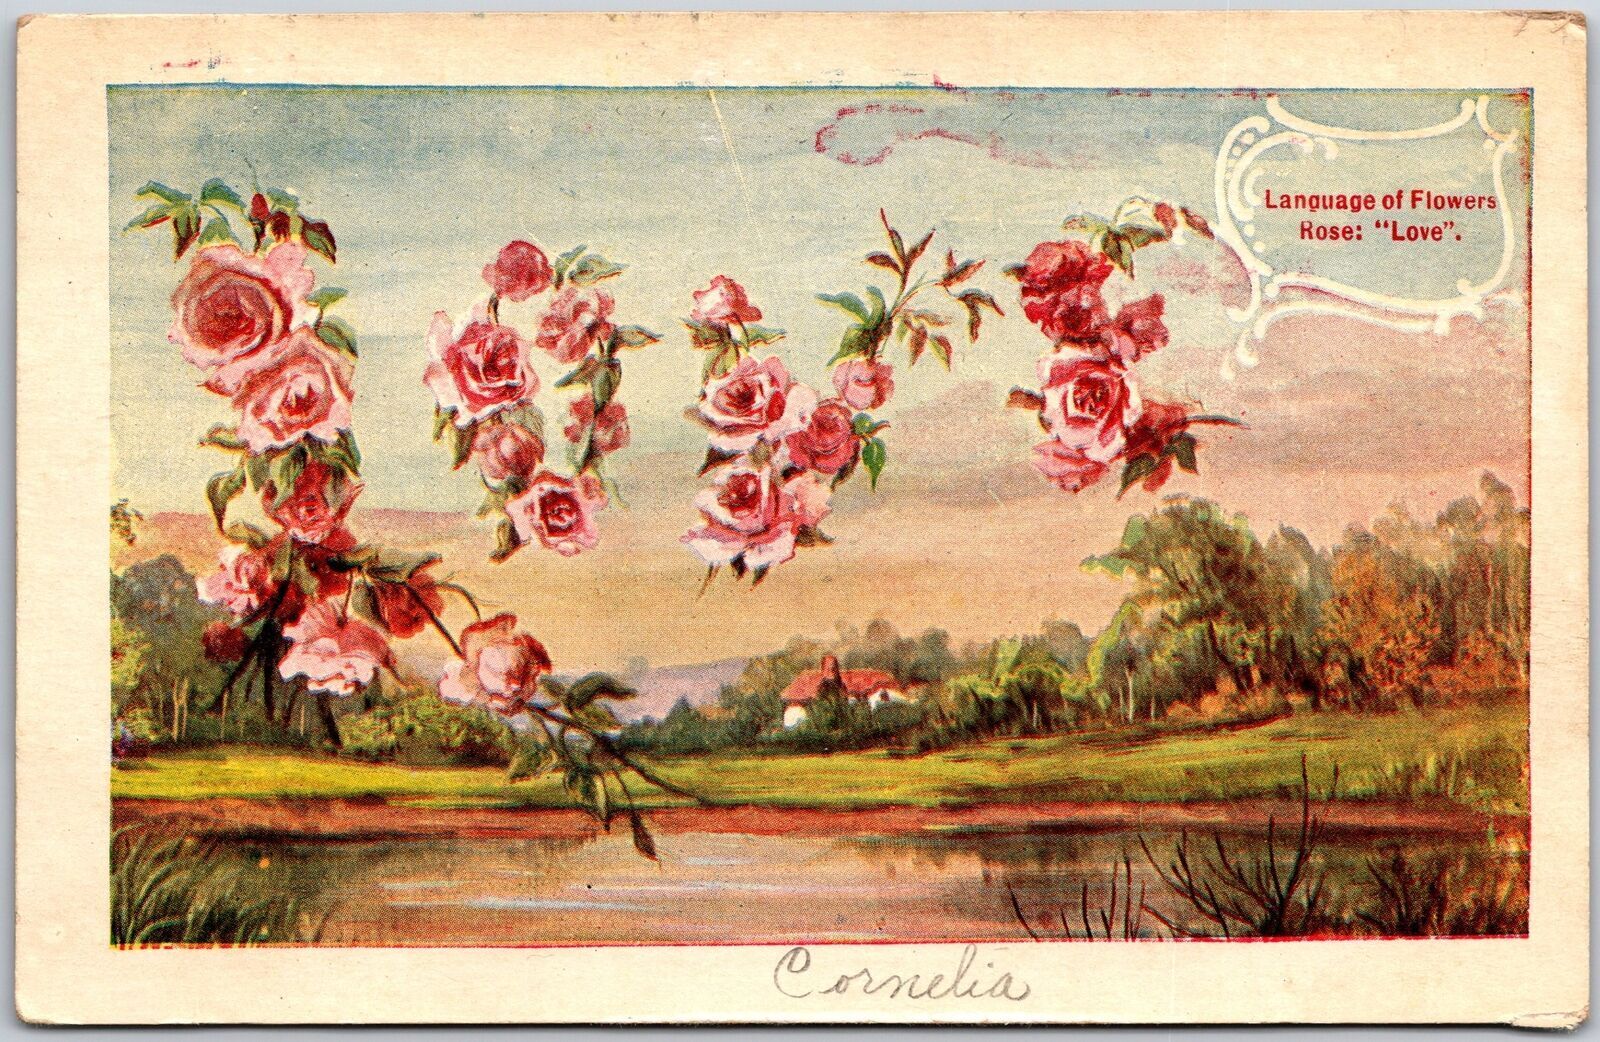 1909 Language of Flower Rose (Love) Landscapes Posted Postcard